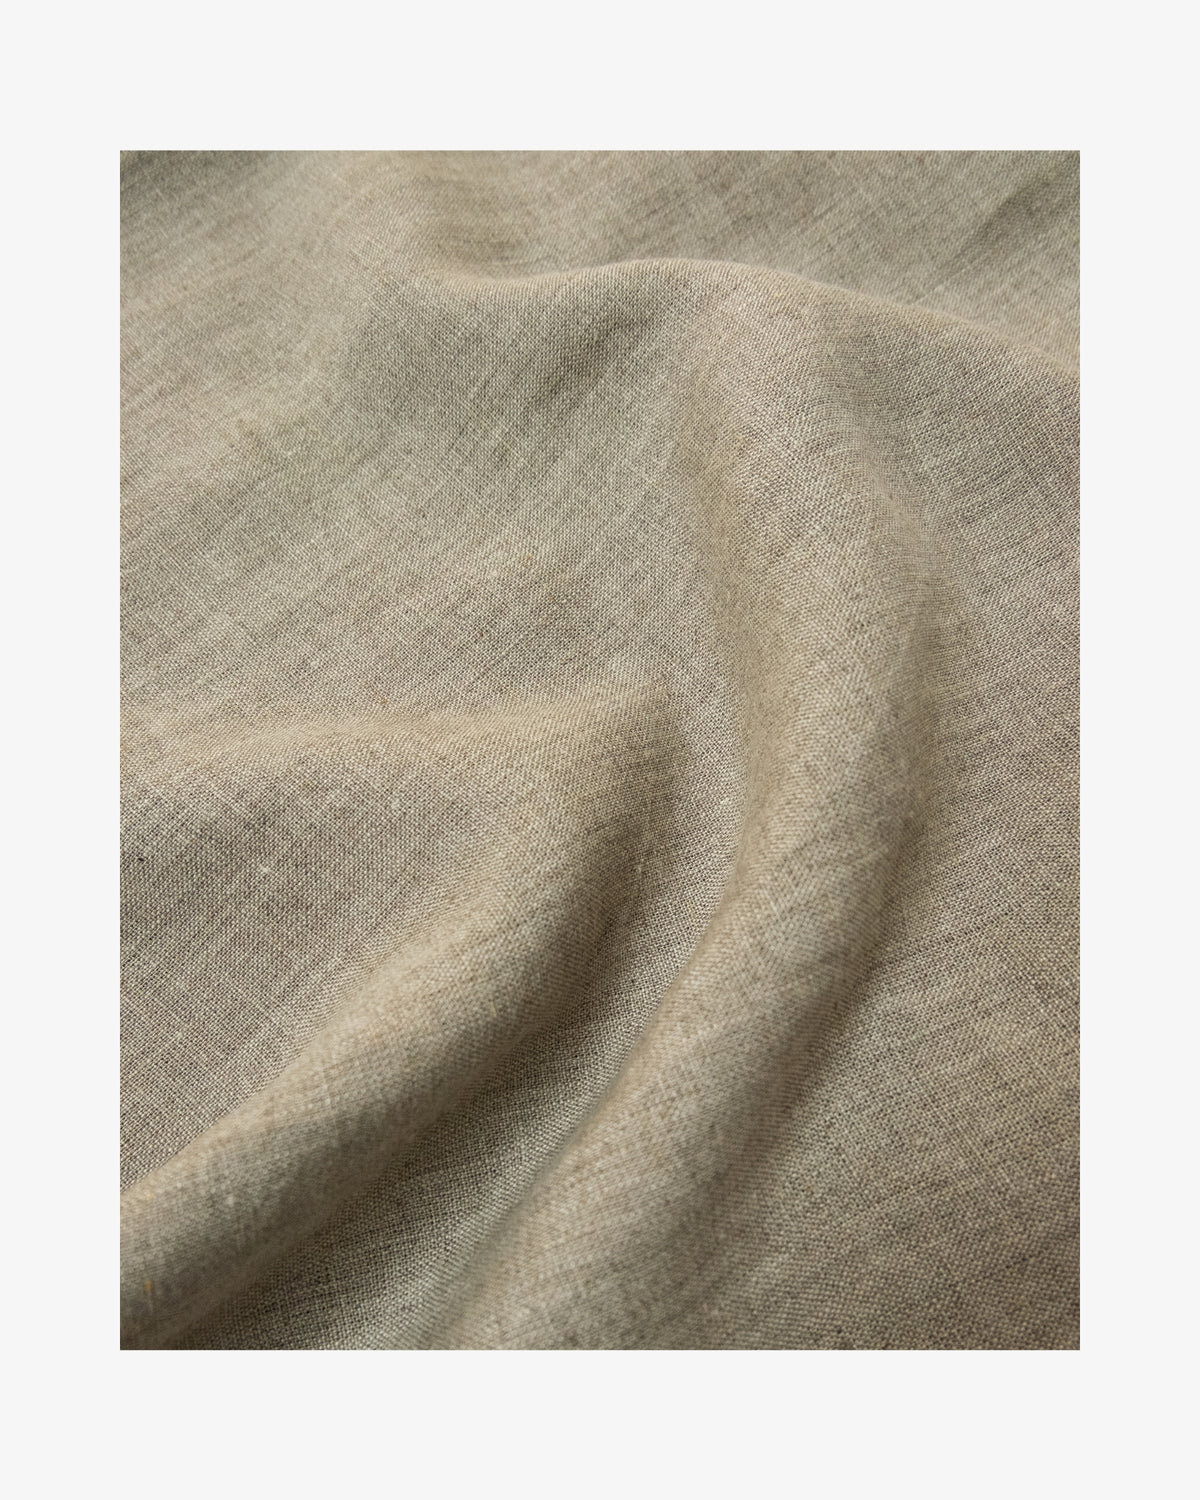 Natural Linen Over Dress Apron by Fog Linen